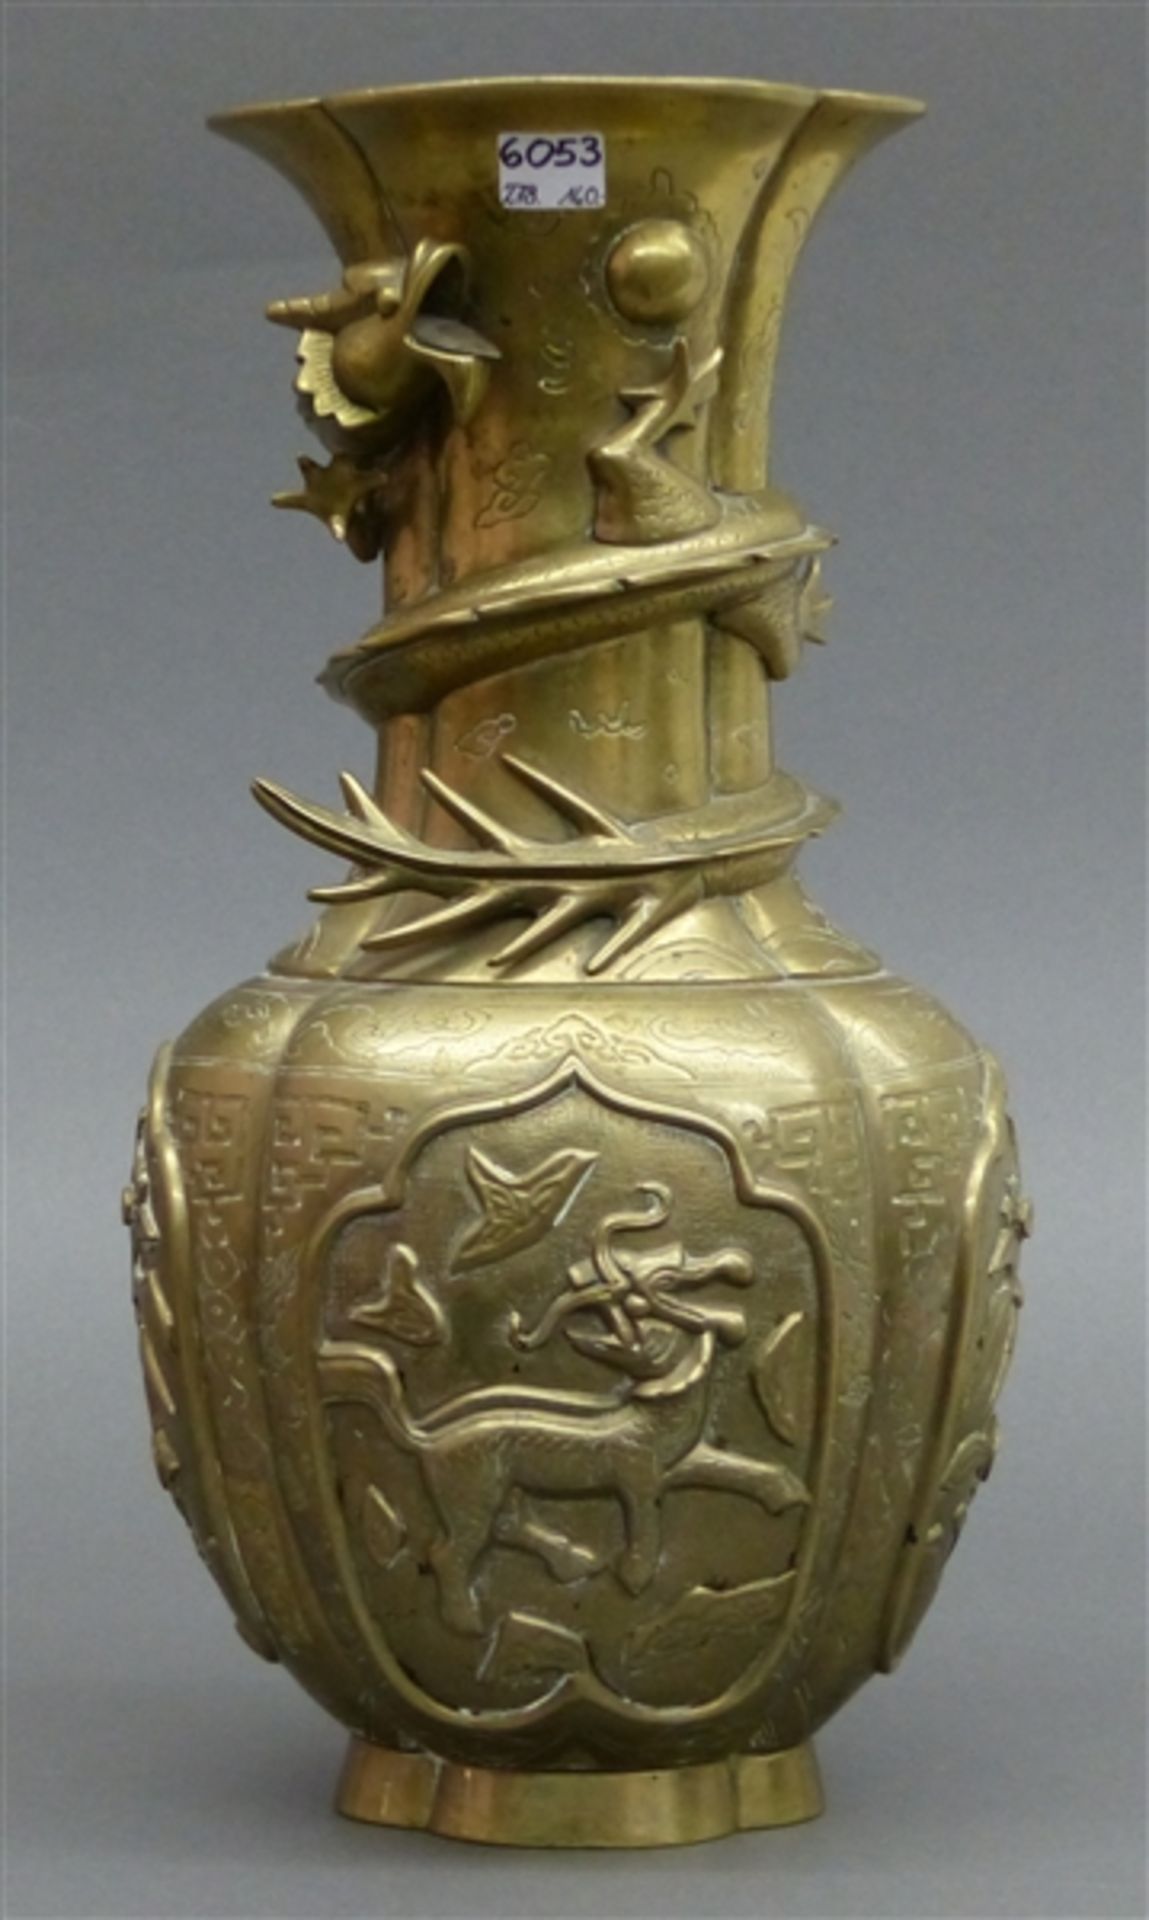 Messingvase China, frühes 19. Jh., reliefierte Drachendarstellungen, reiche Gravur, reliefierte